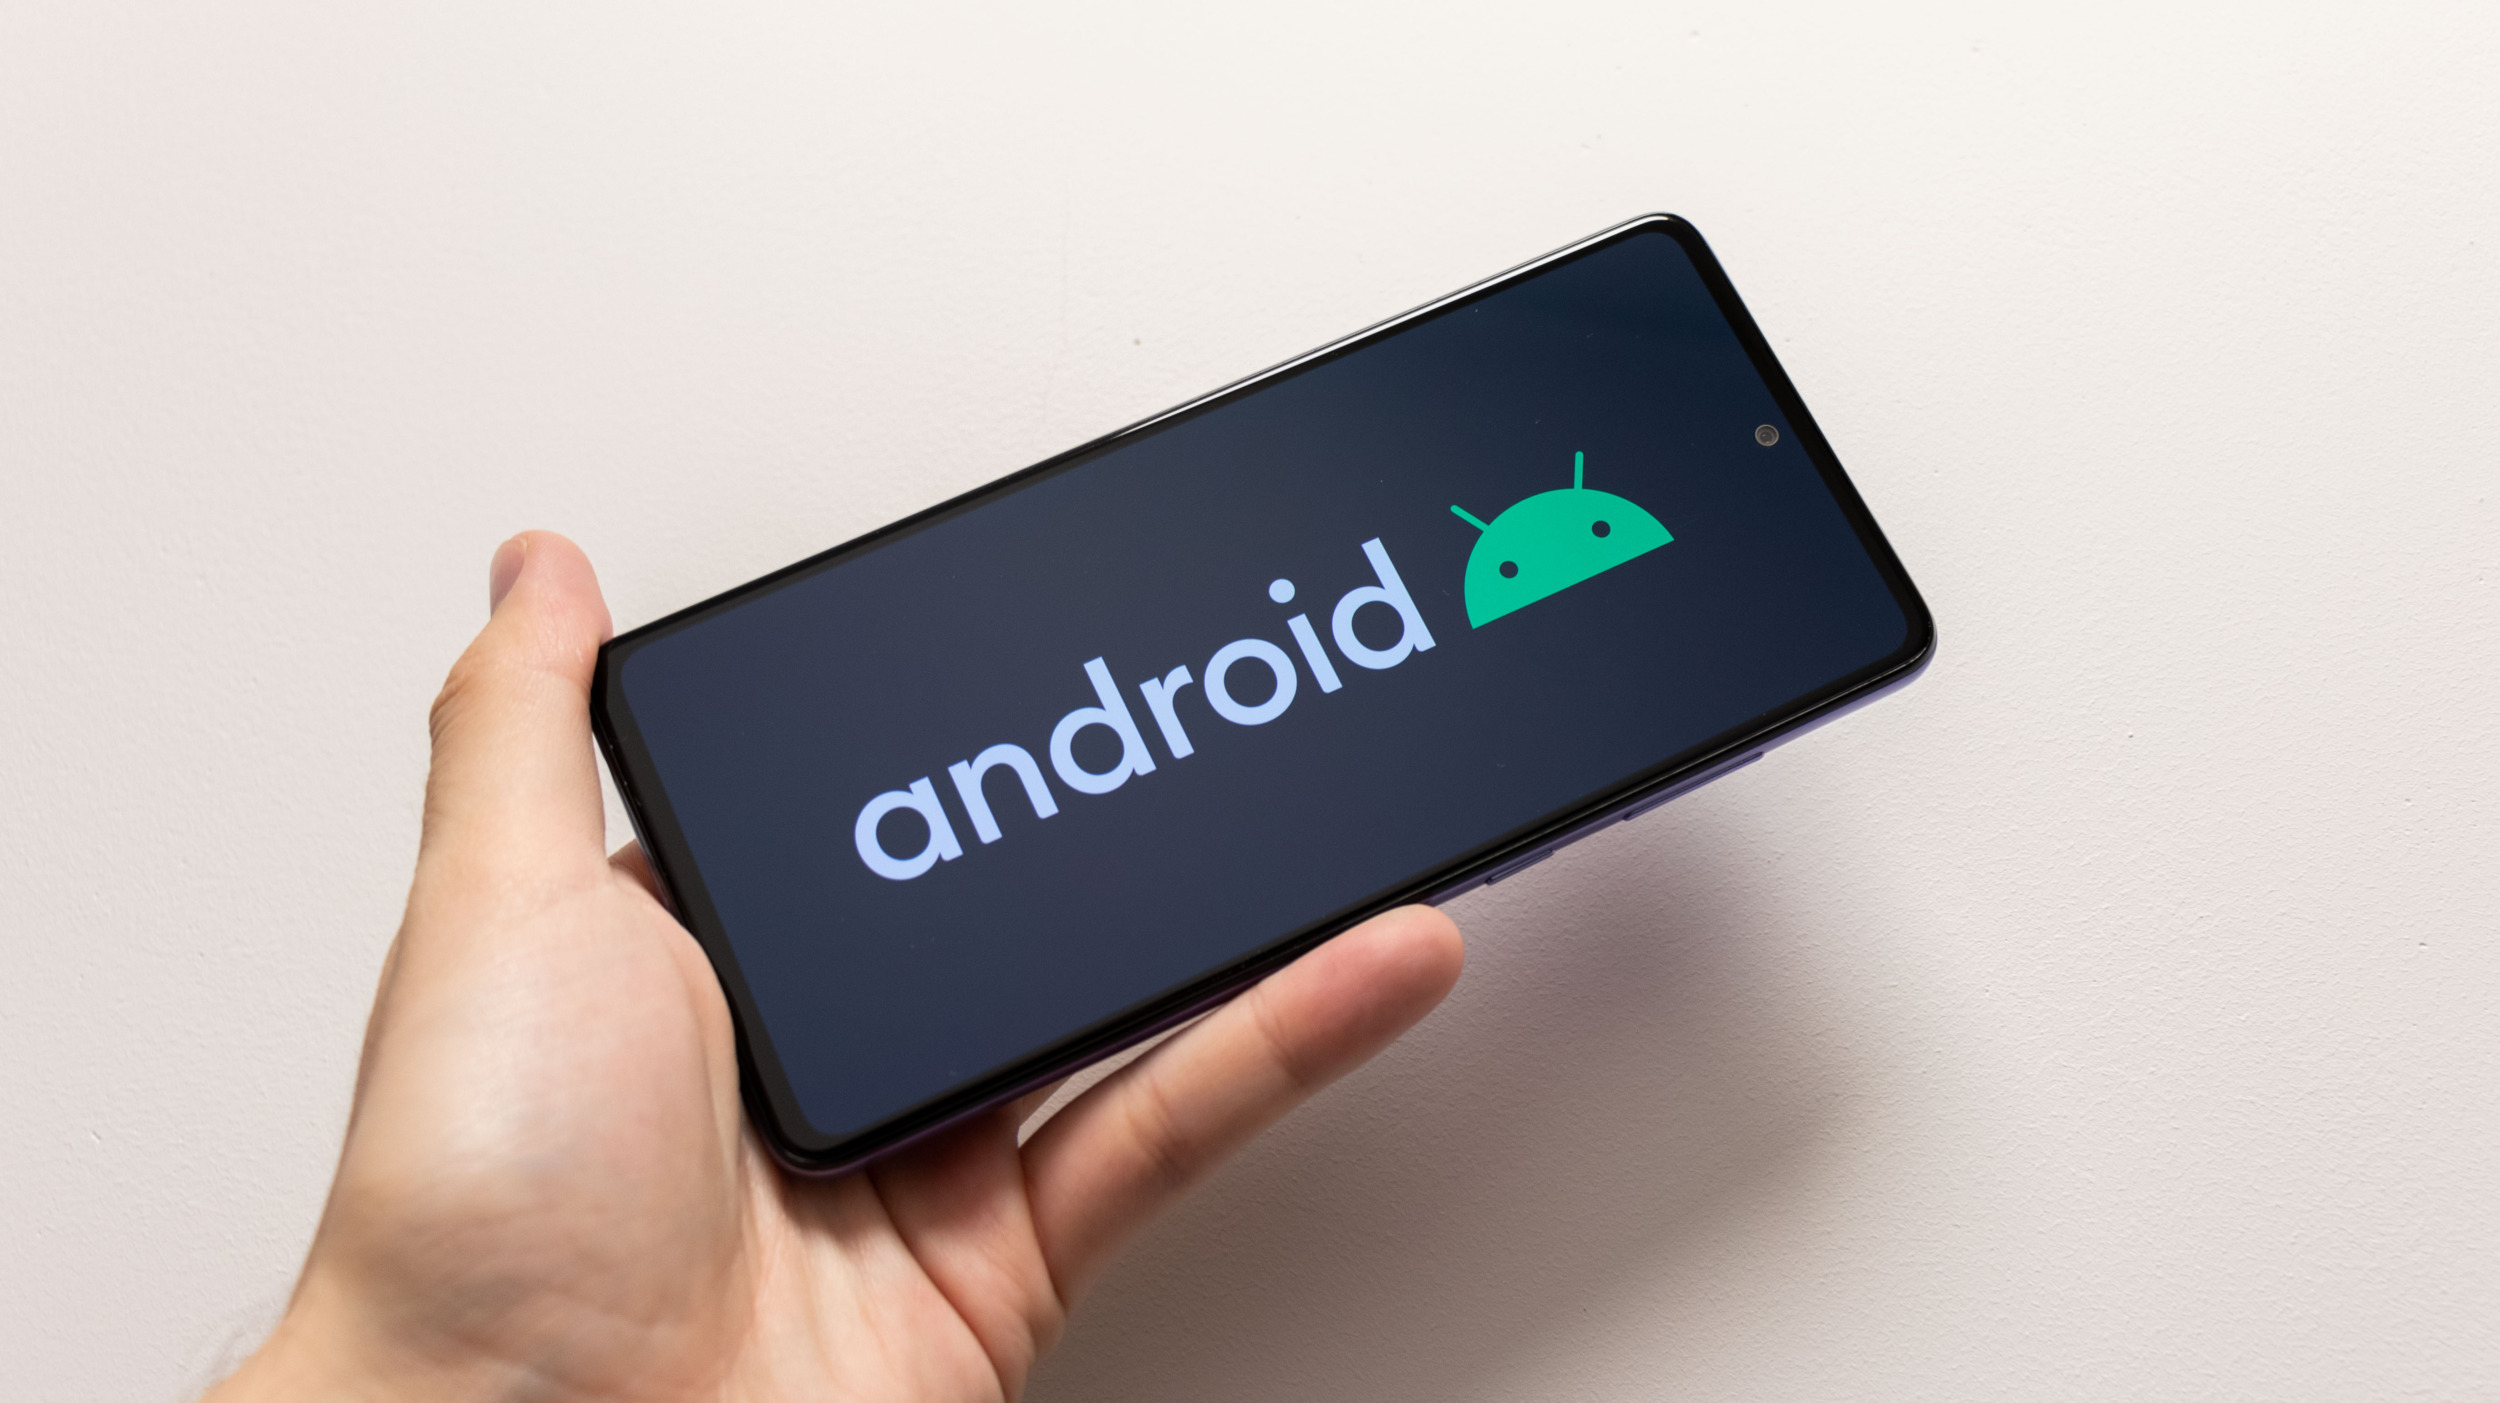 Android 11 – které mobily mají dostupnou aktualizaci [aktualizováno]